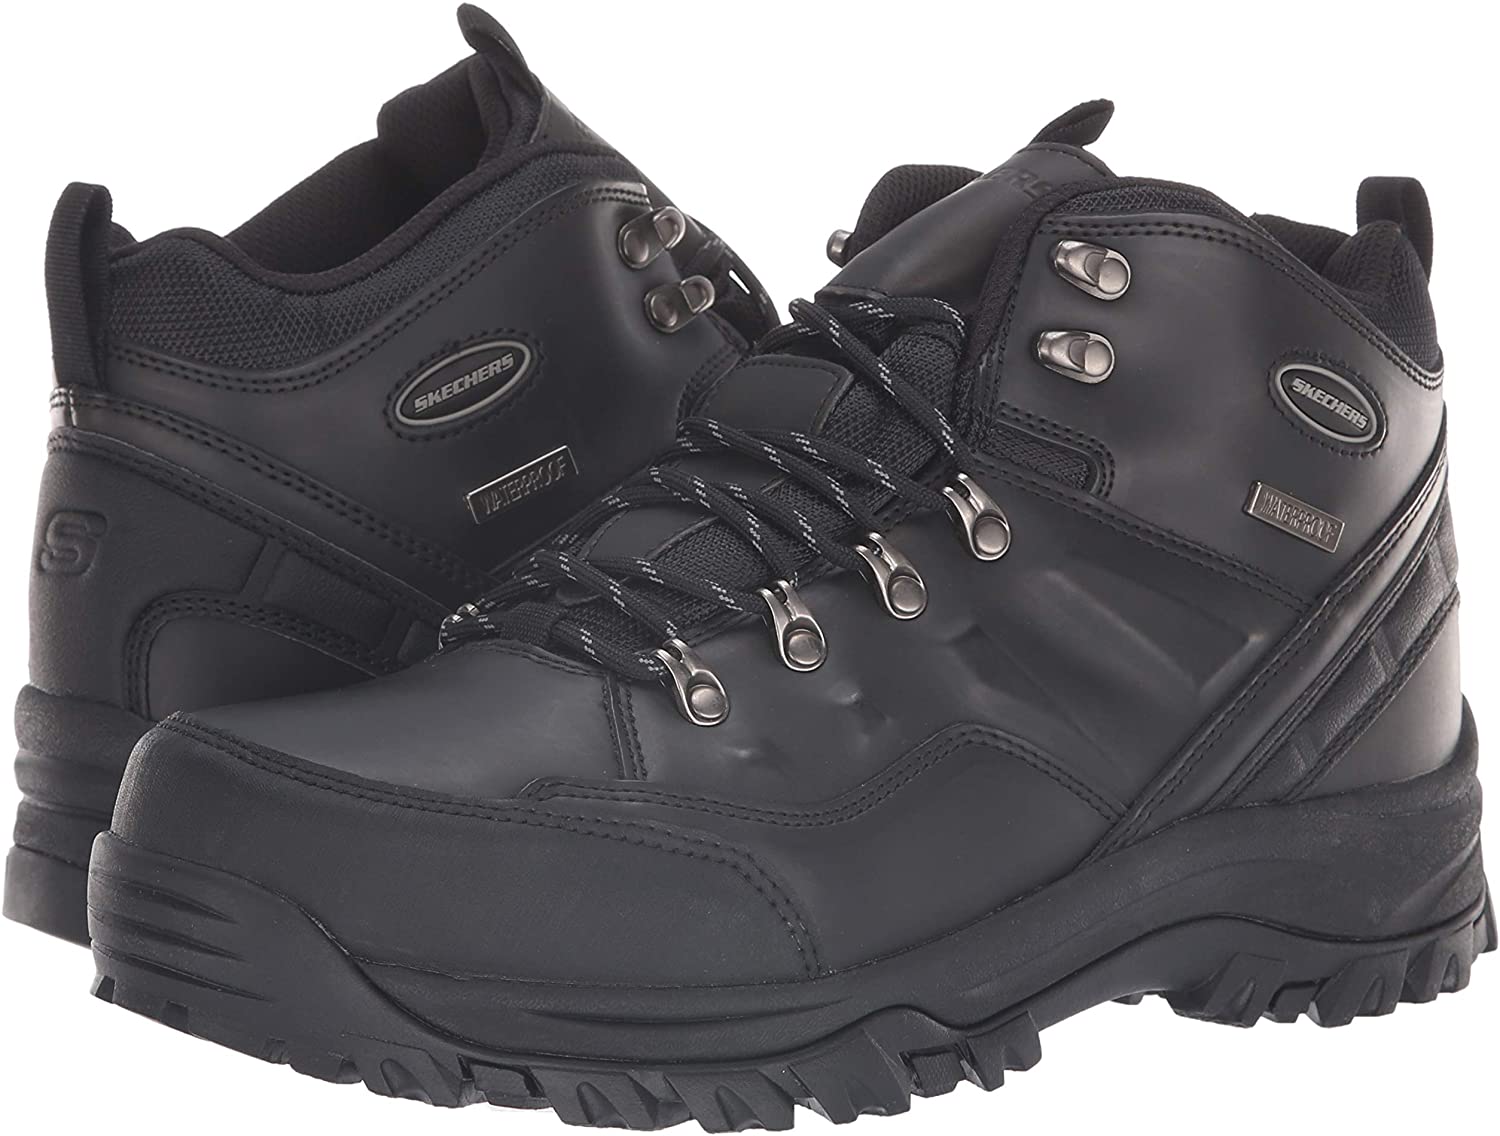 Skechers Men's Relment-Traven Hiking Boot, Bbk, Size 11.5 HFHK | eBay